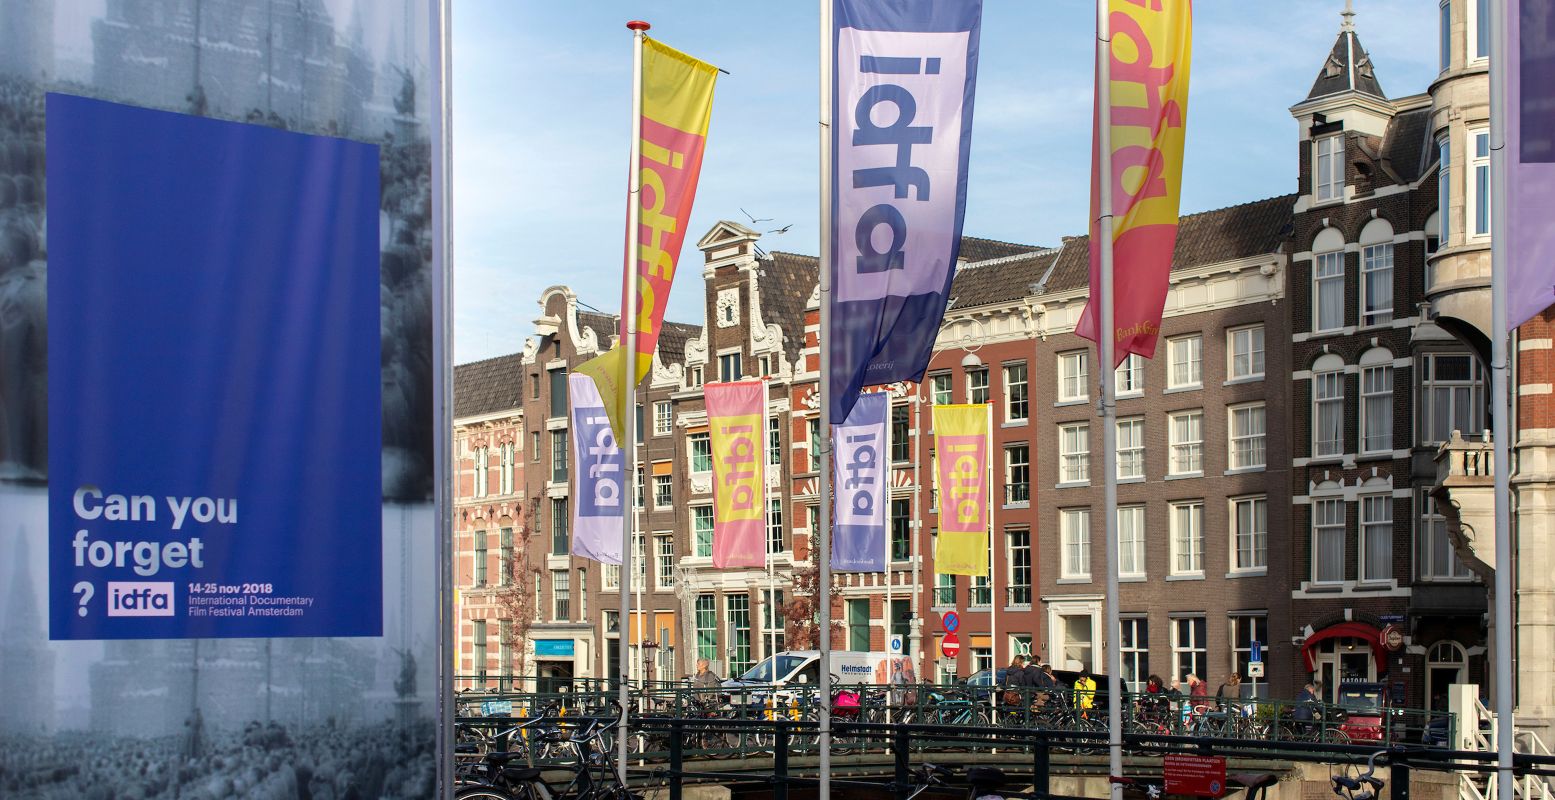 De IDFA-vlaggen wapperen op het Muntplein in Amsterdam. Foto: Thomas Schlijper